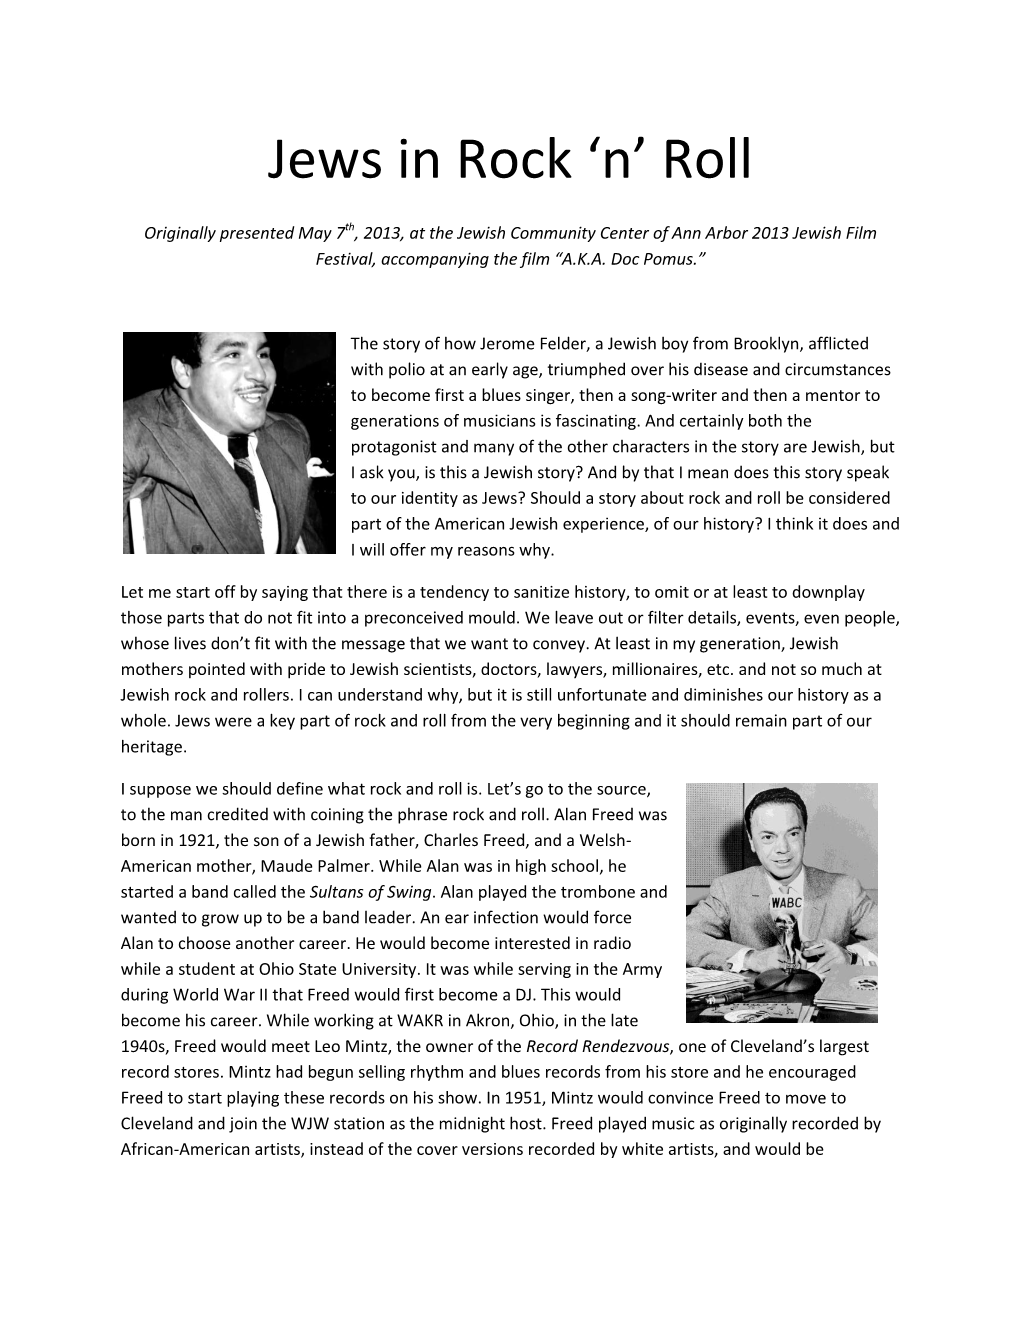 Jews in Rock ‘N’ Roll